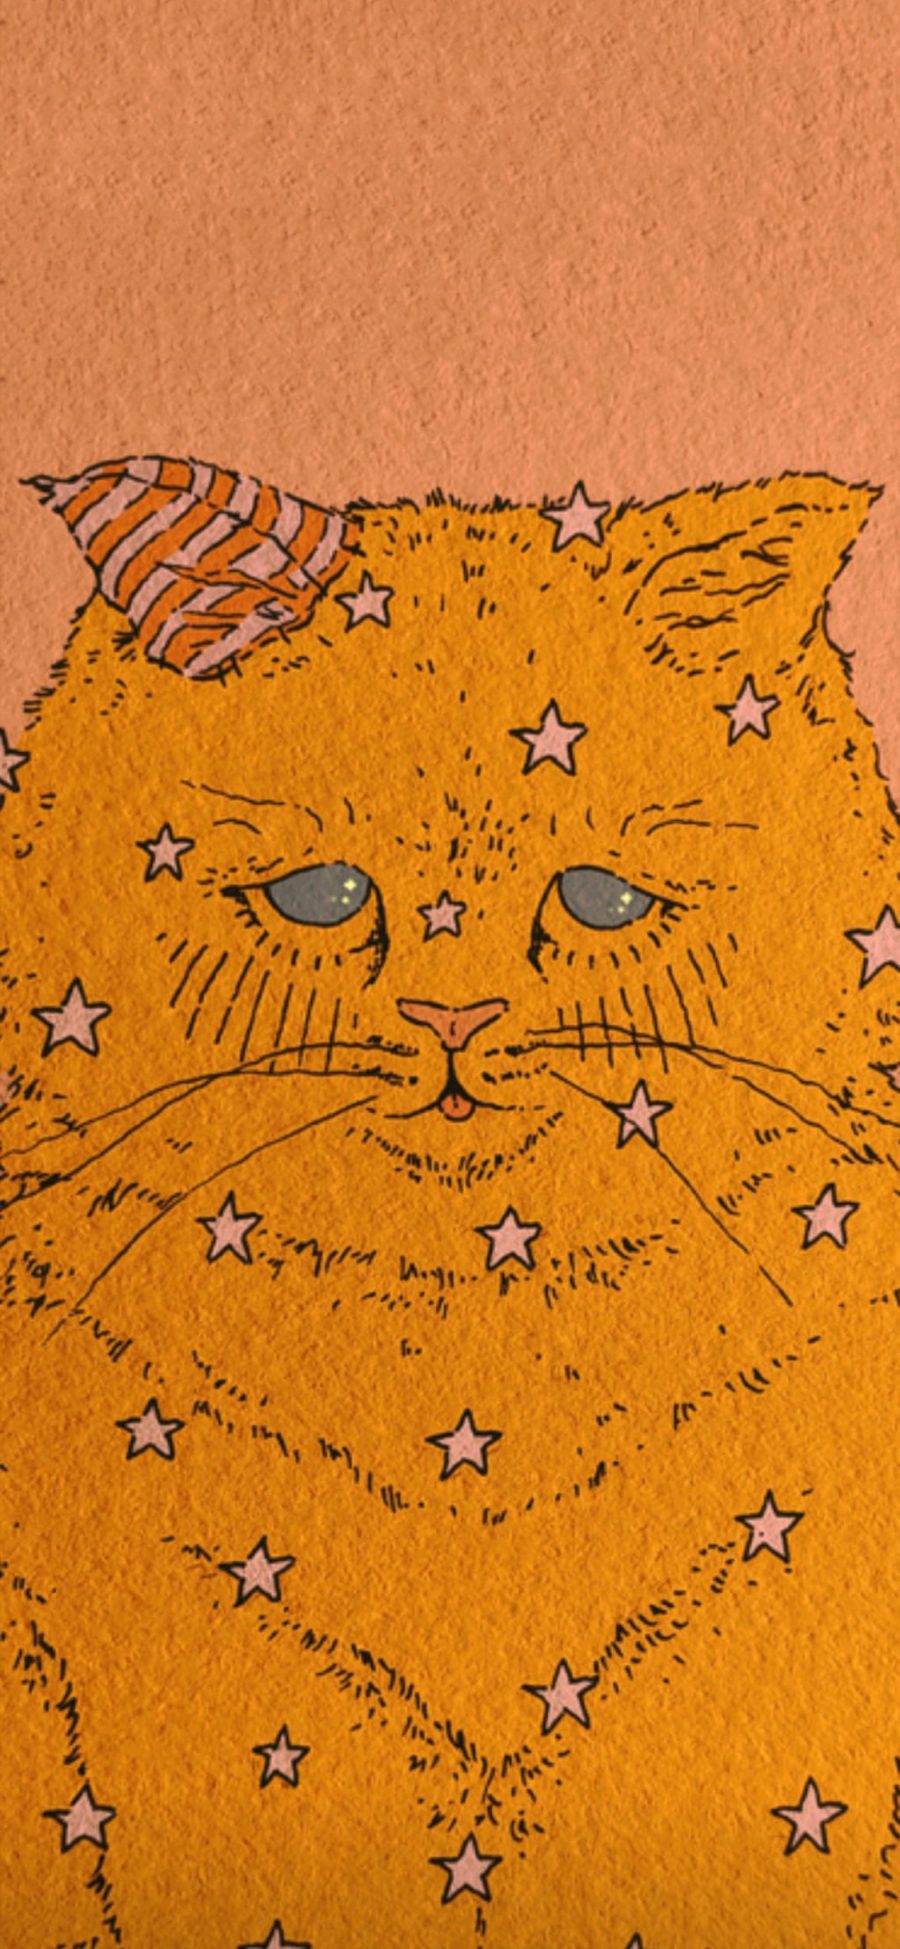 [2436×1125]猫咪 插图 黄色 星星 苹果手机动漫壁纸图片